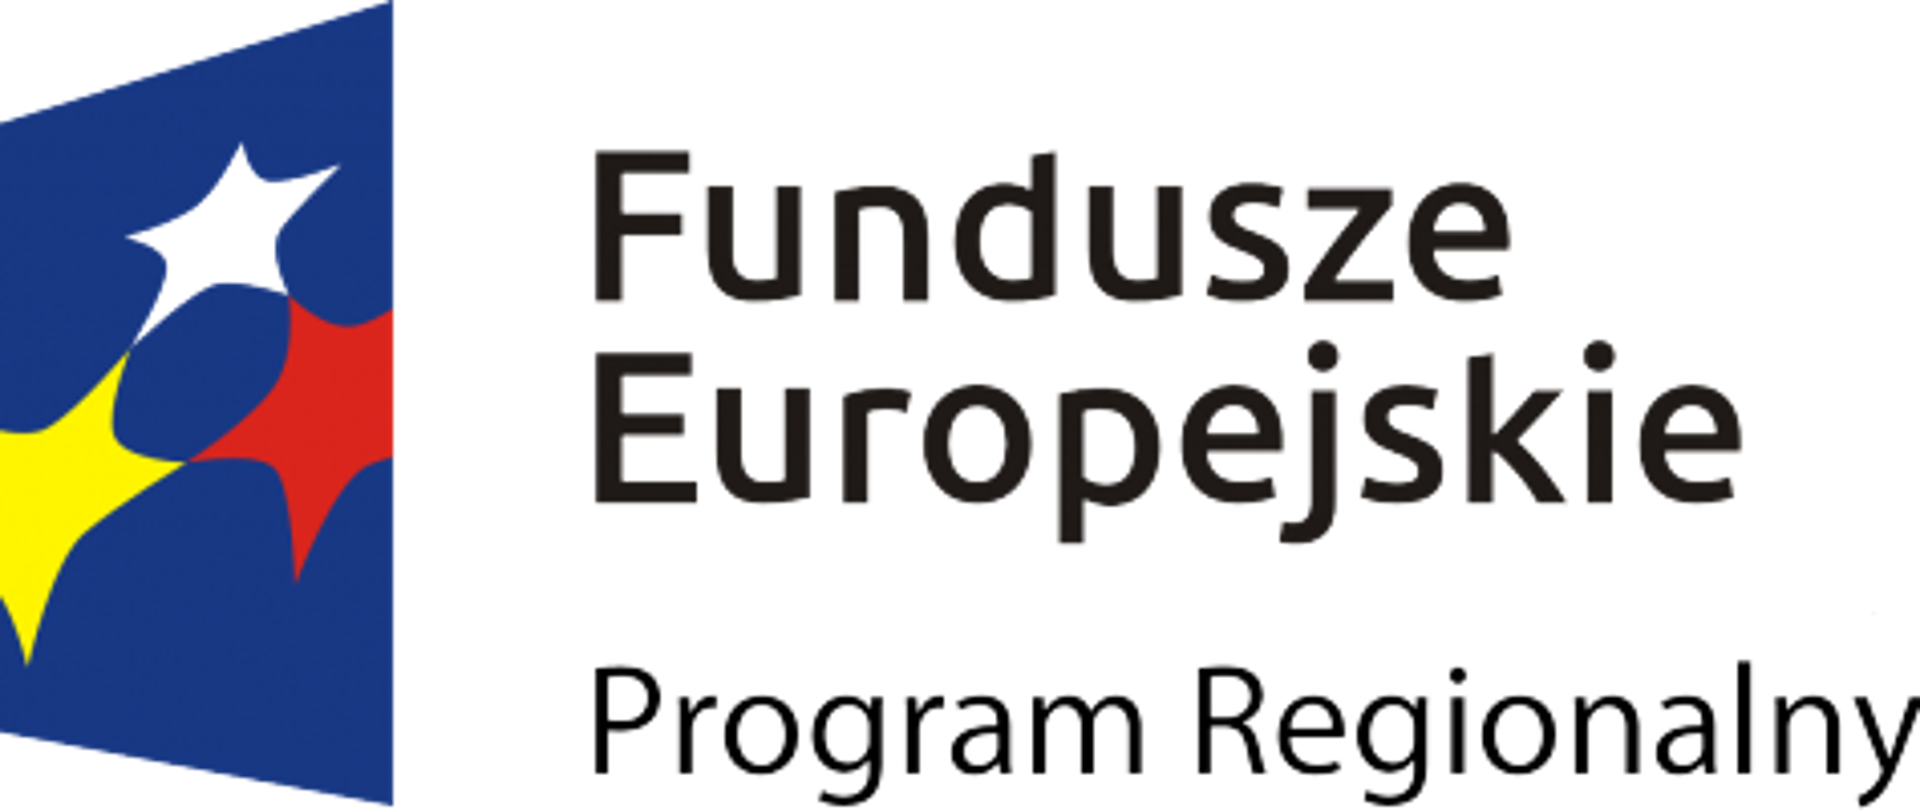 Napis" Fundusze Europejskie Program Regionalny